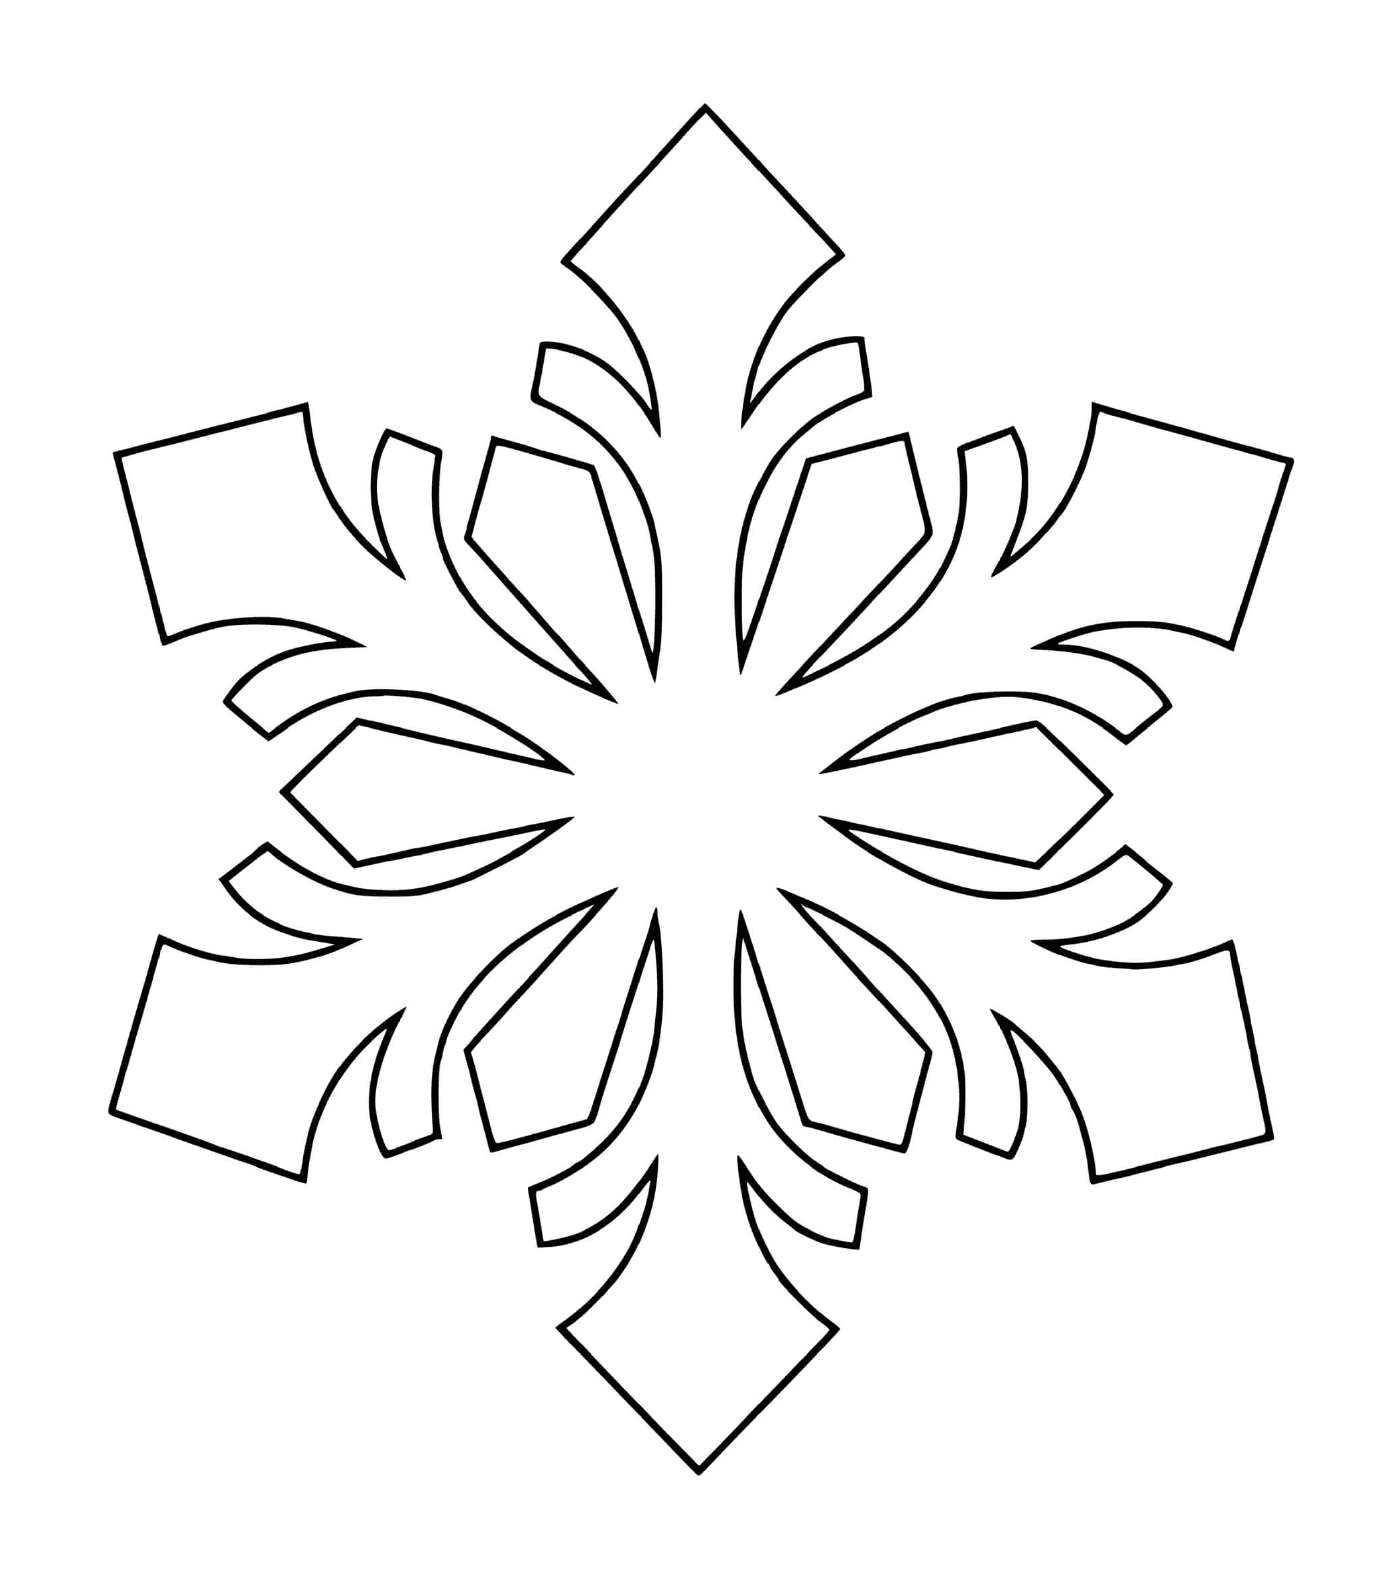  A natural snowflake 